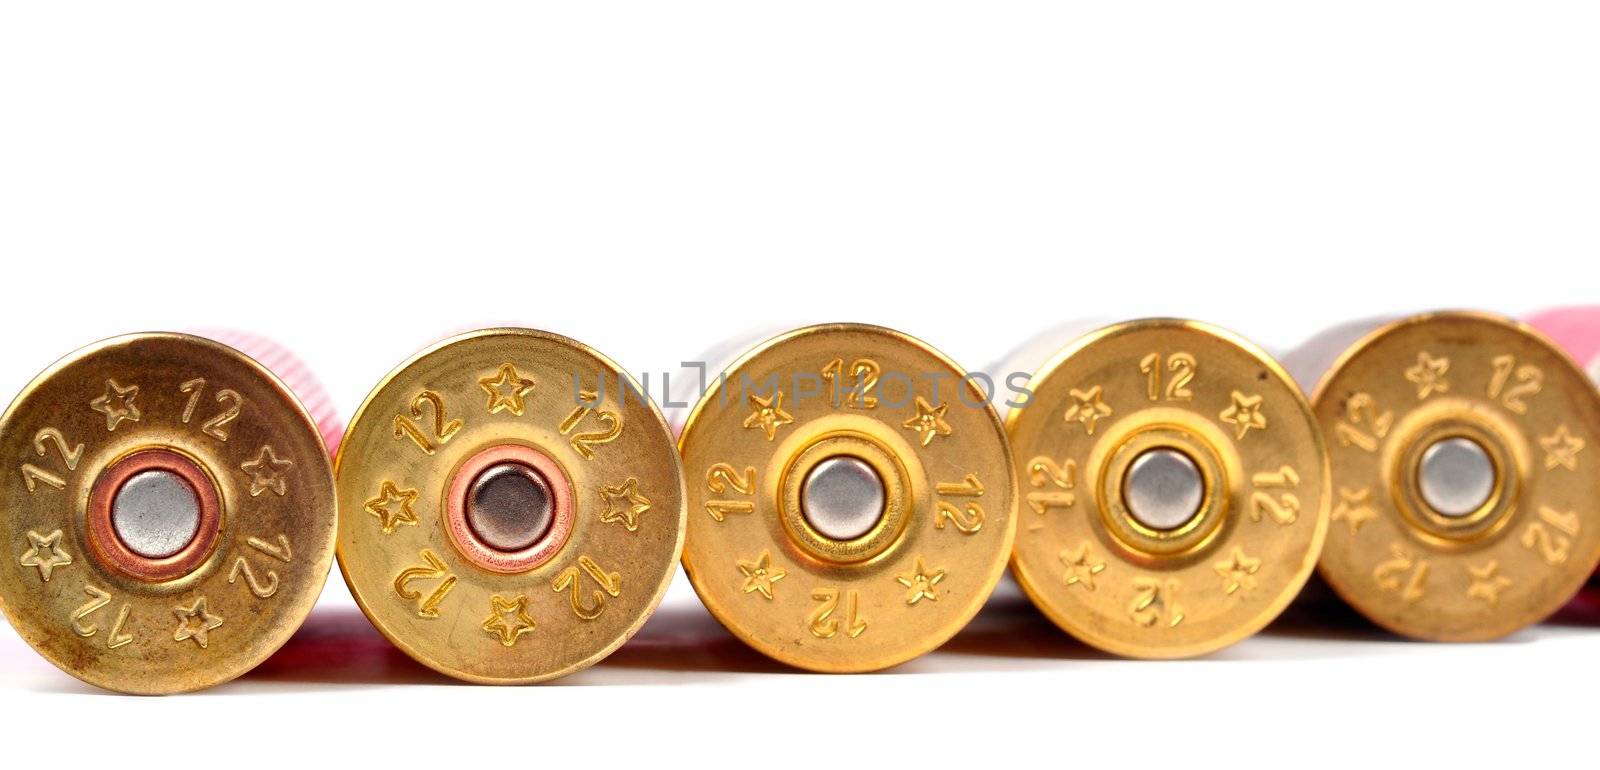 12 gauge shtogun shells used for hunting